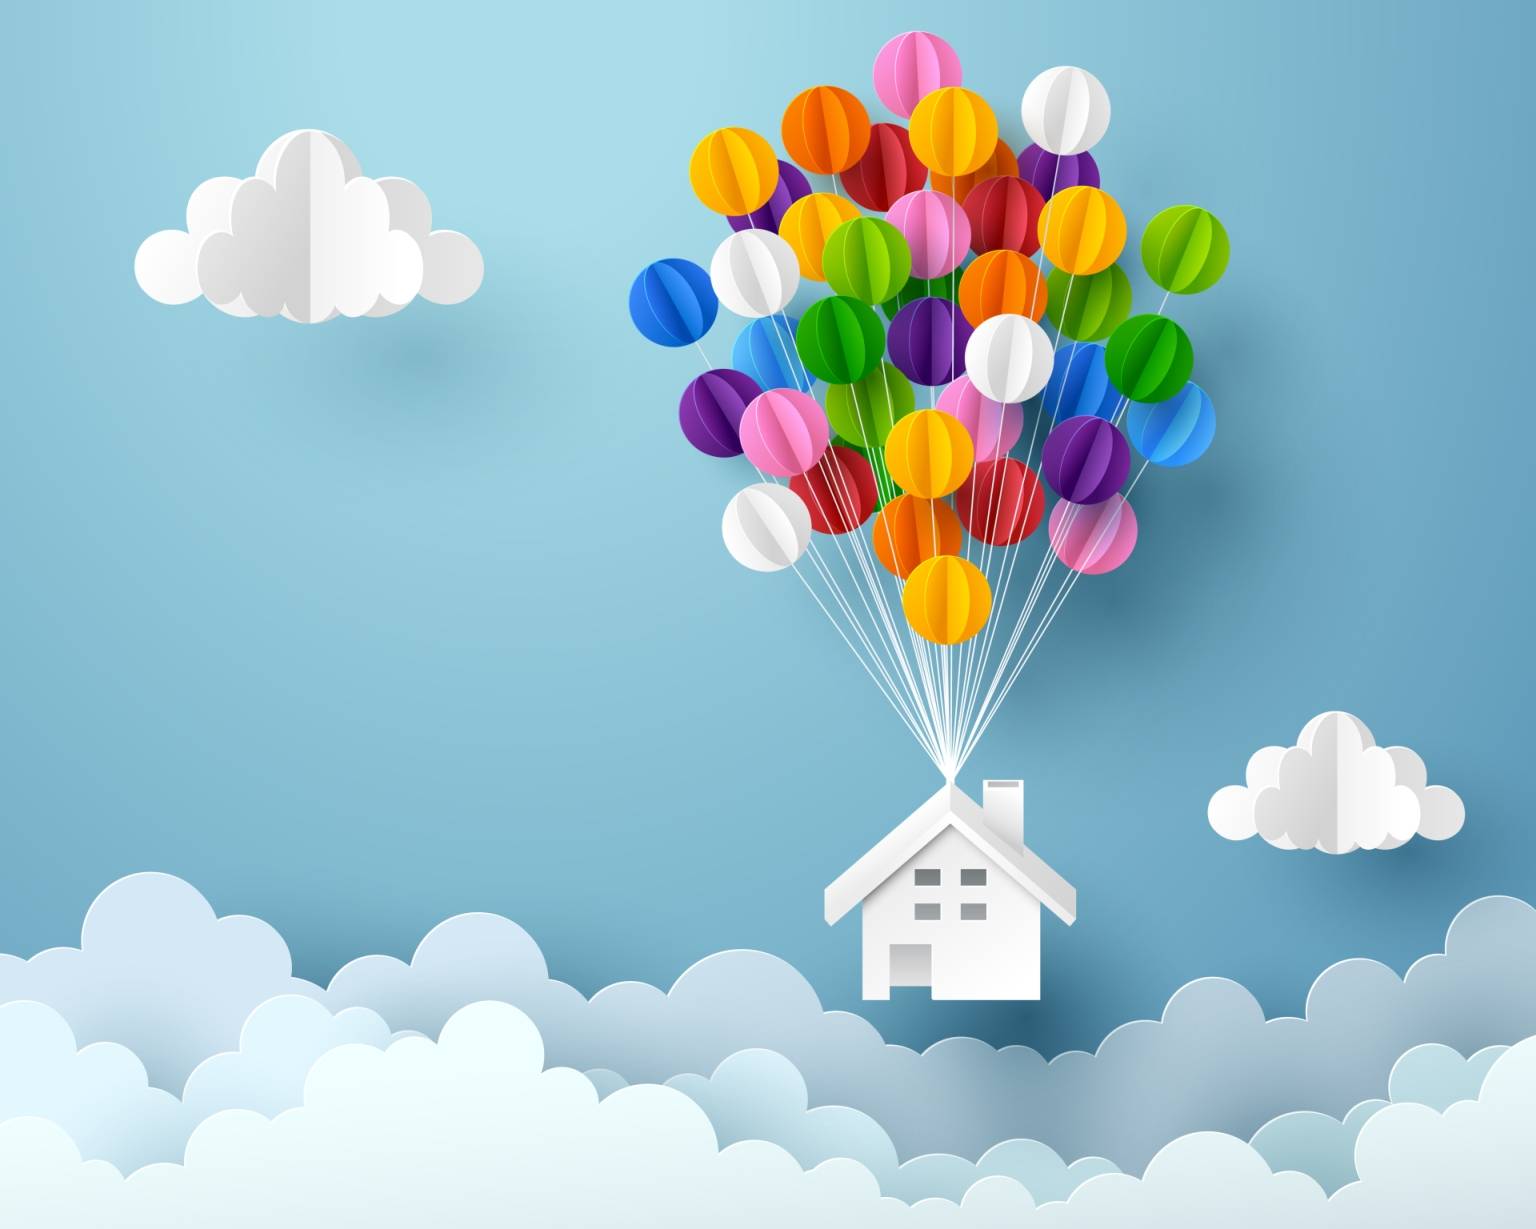 Mapa marzeń - jak ją stworzyć? Ilustracja trójwymiarowa - kolorowe balony unoszą domek z papieru ku niebu.